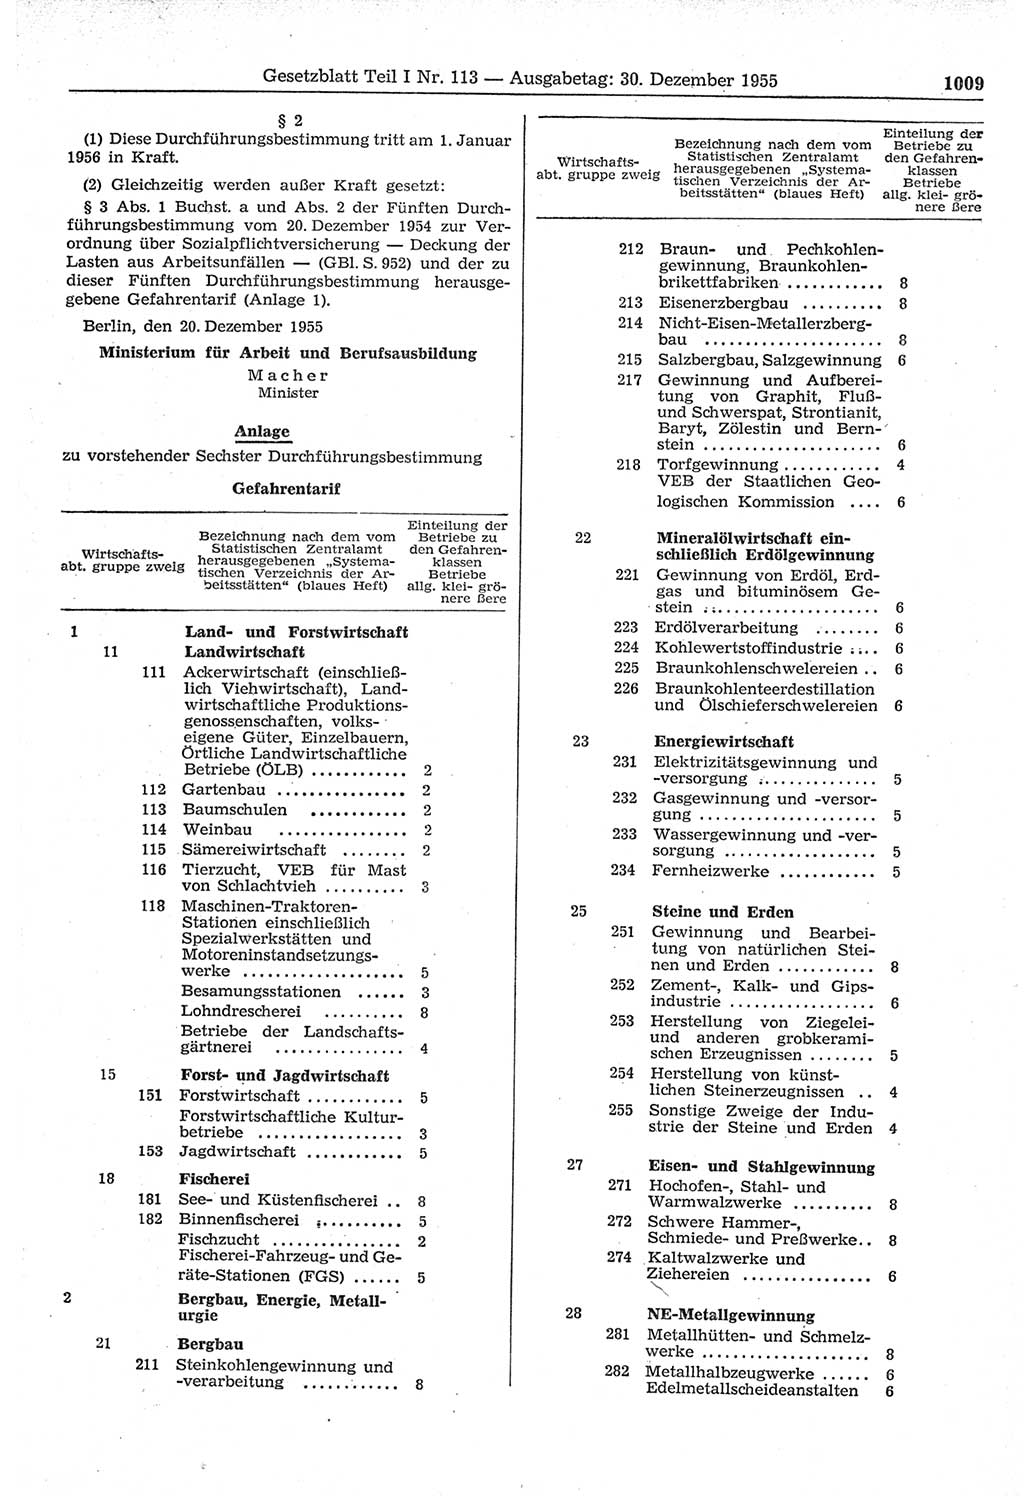 Gesetzblatt (GBl.) der Deutschen Demokratischen Republik (DDR) Teil Ⅰ 1955, Seite 1009 (GBl. DDR Ⅰ 1955, S. 1009)